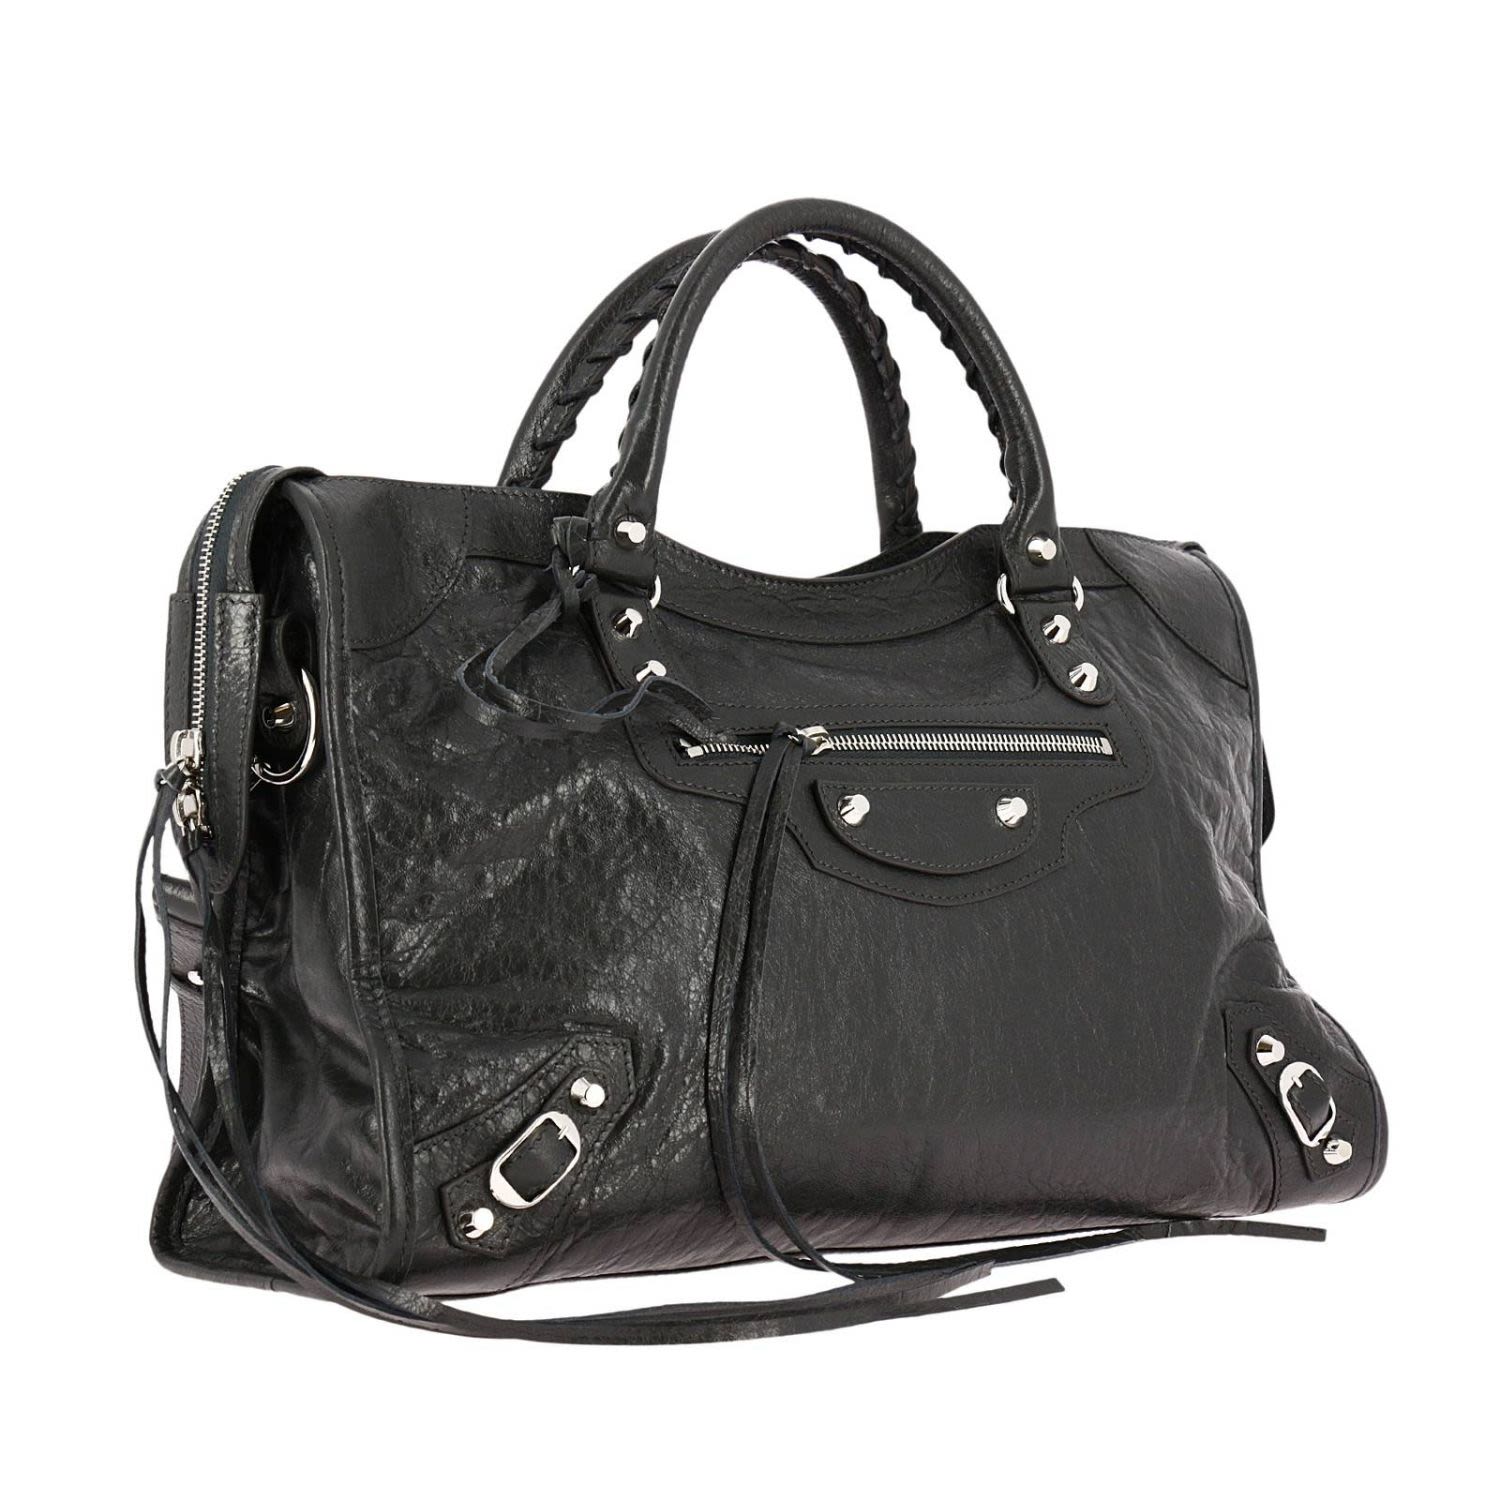 Balenciaga - Handbag Shoulder Bag Women Balenciaga - lead, Women's